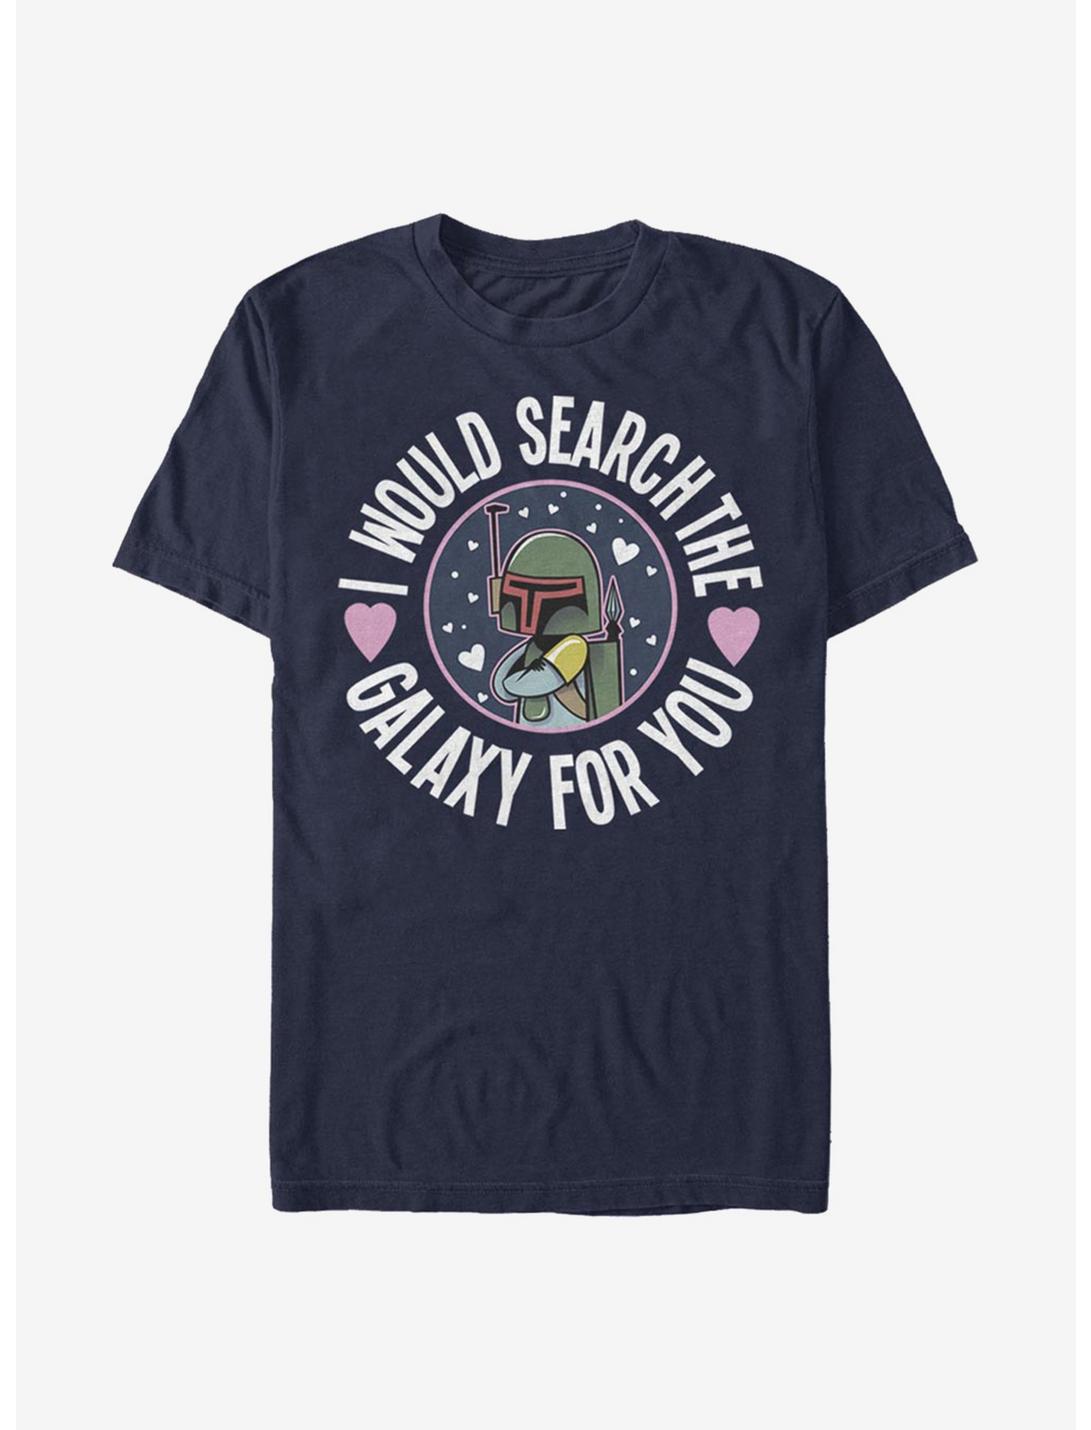 Star Wars Boba Search The Galaxy T-Shirt, NAVY, hi-res